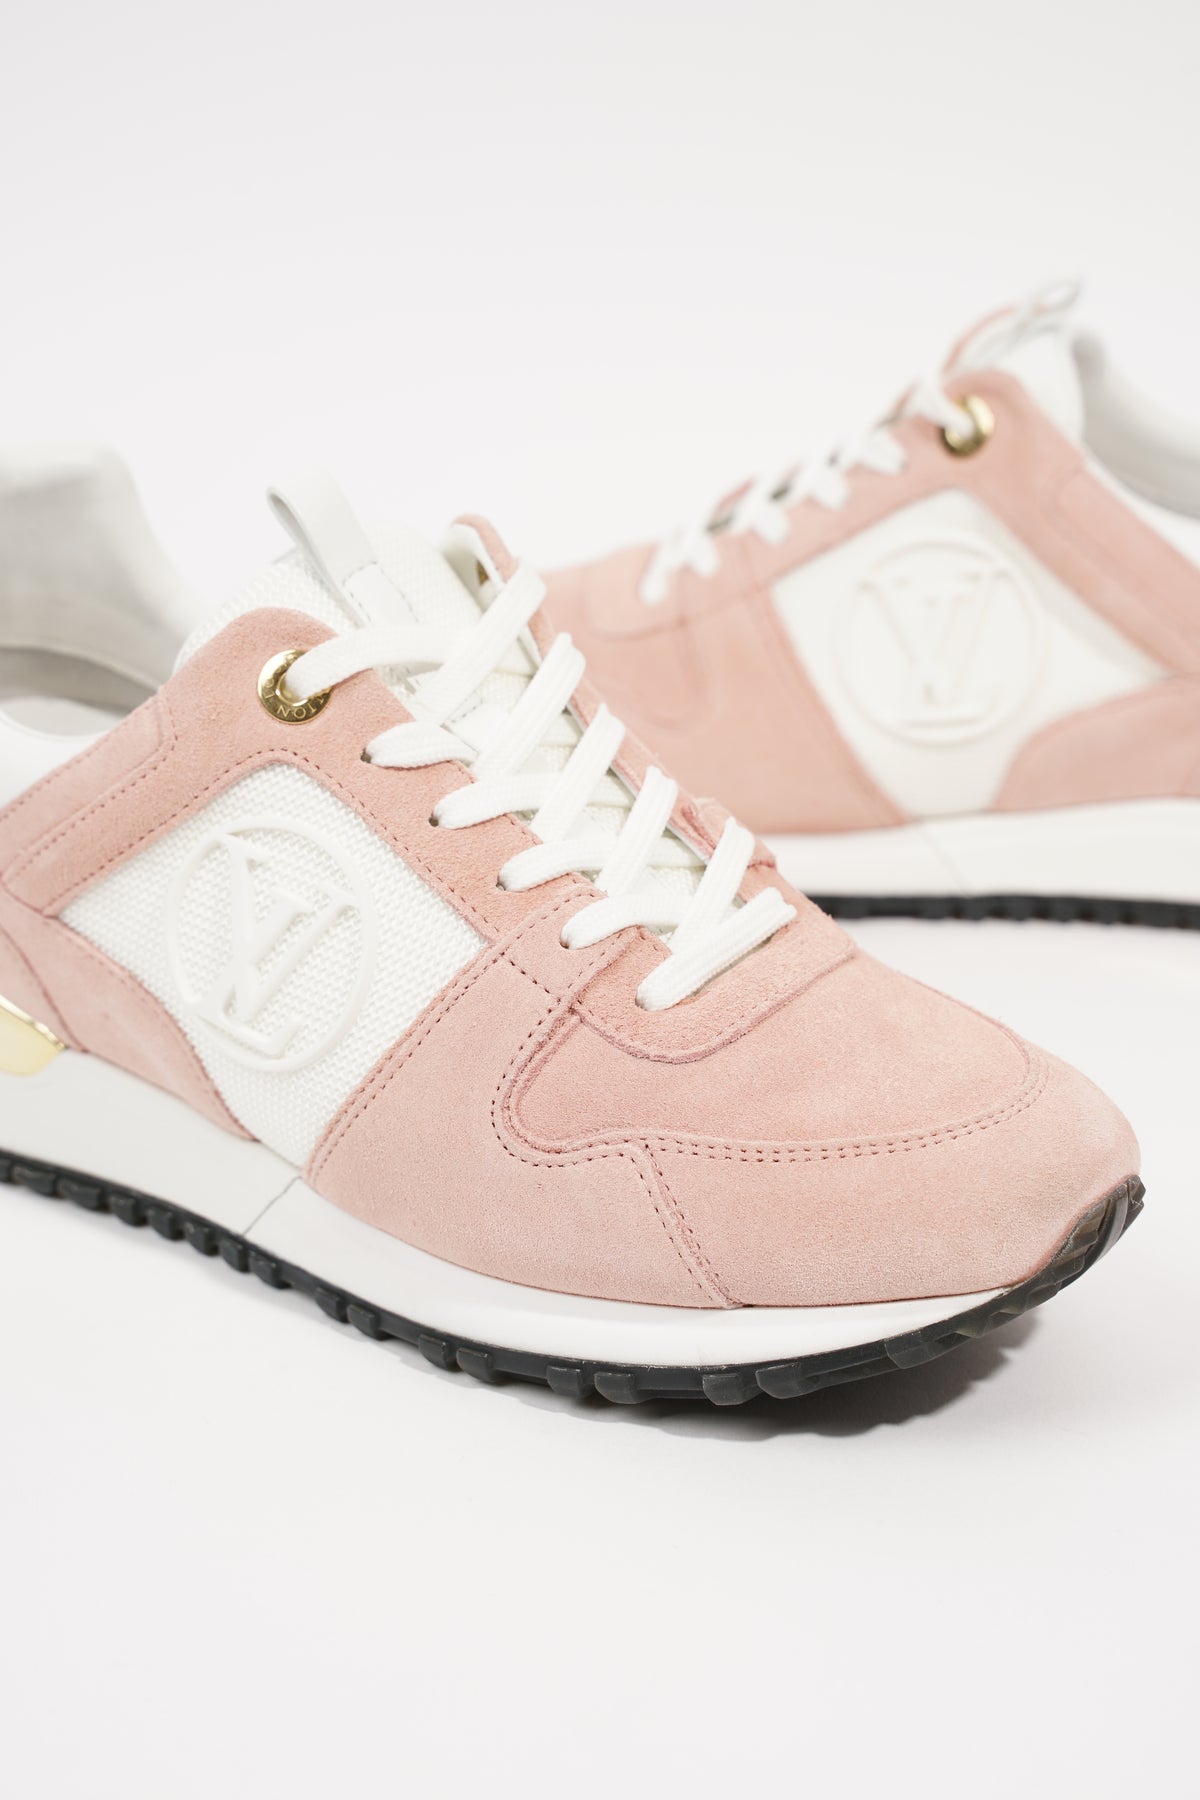 Louis Vuitton Women's Pink & White Suede Run Away Sneaker